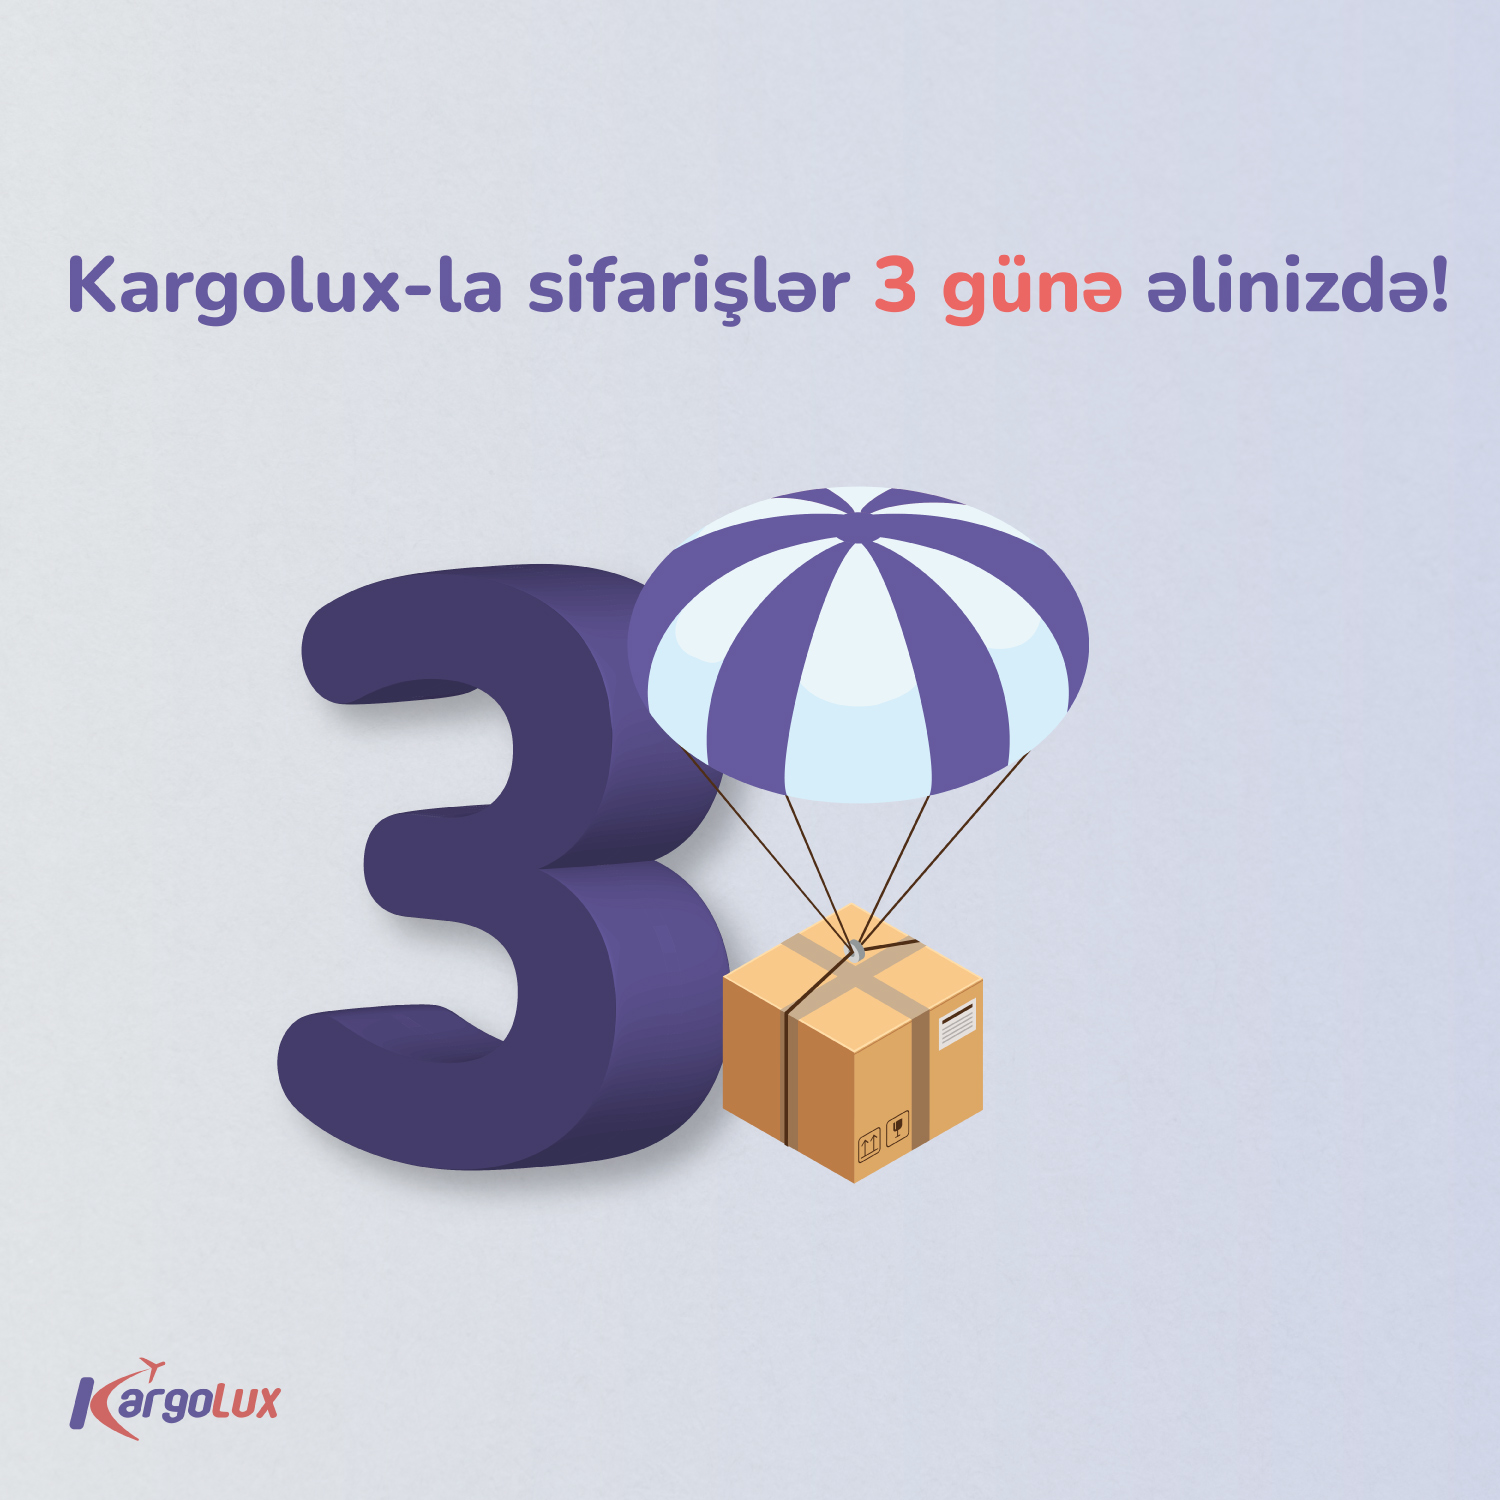 Kargolux-la sifarişlər 3 günə əlinizdə!